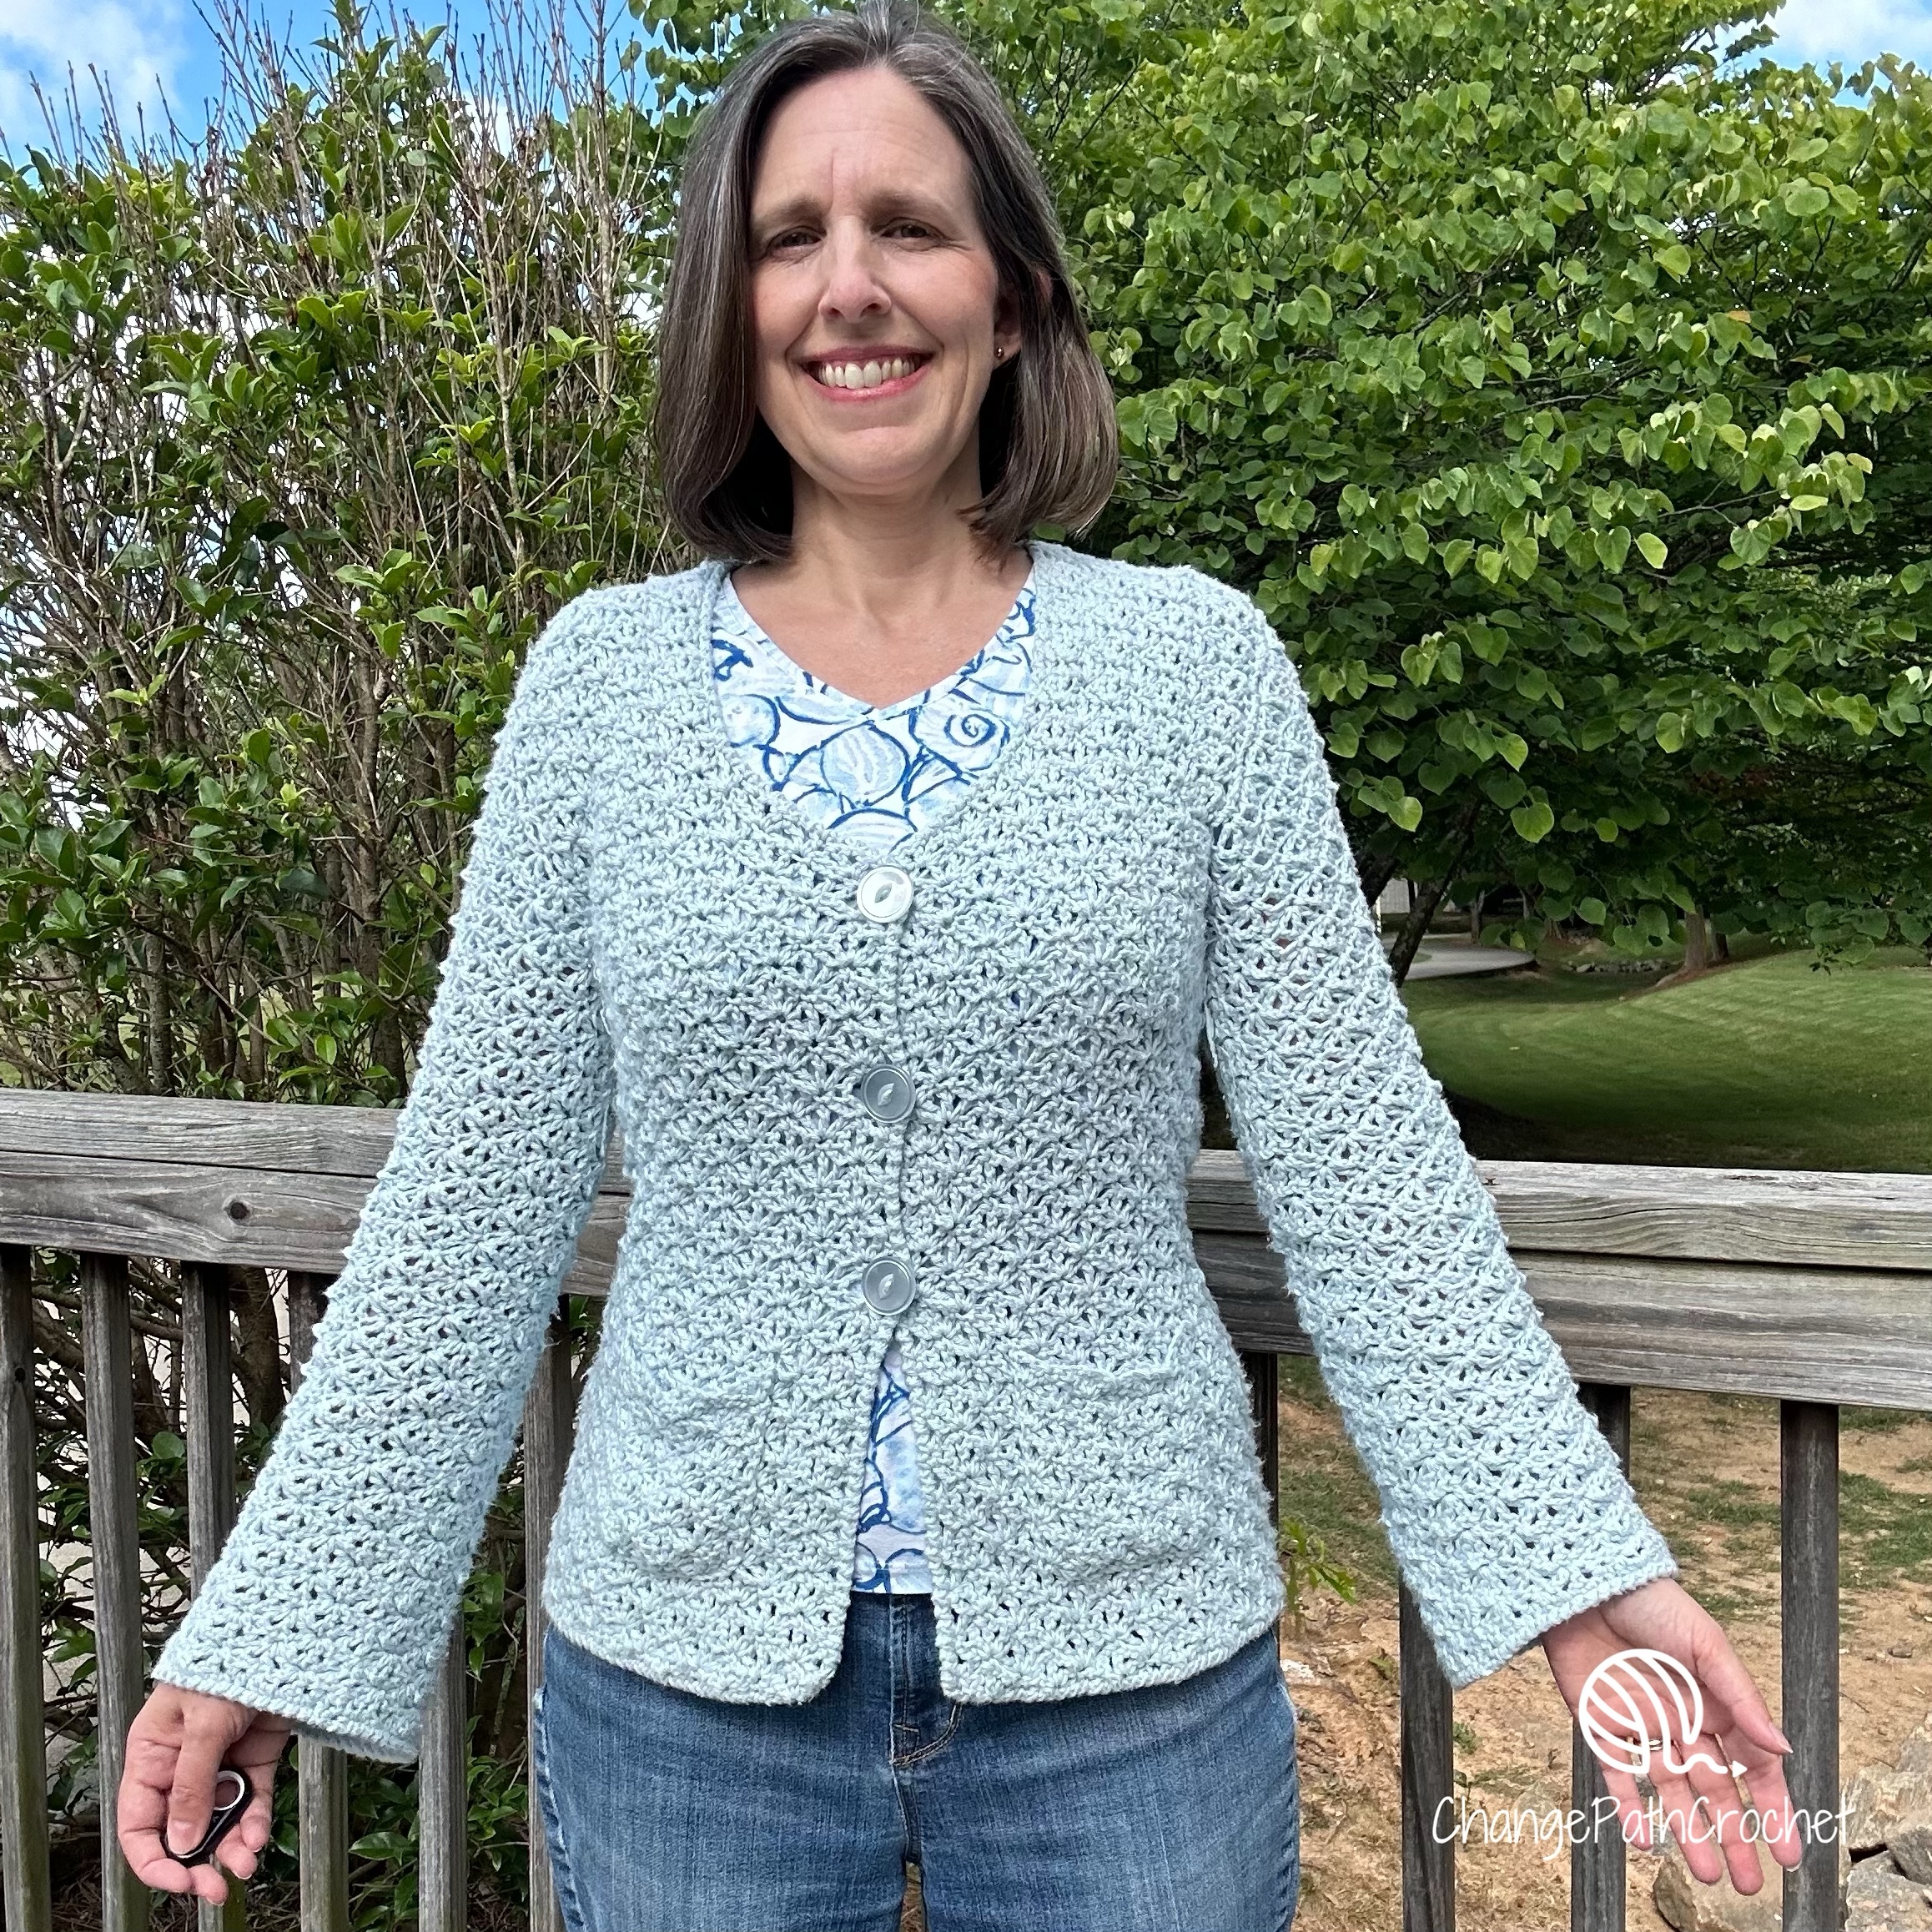 woman wearing light blue crochet cardigan